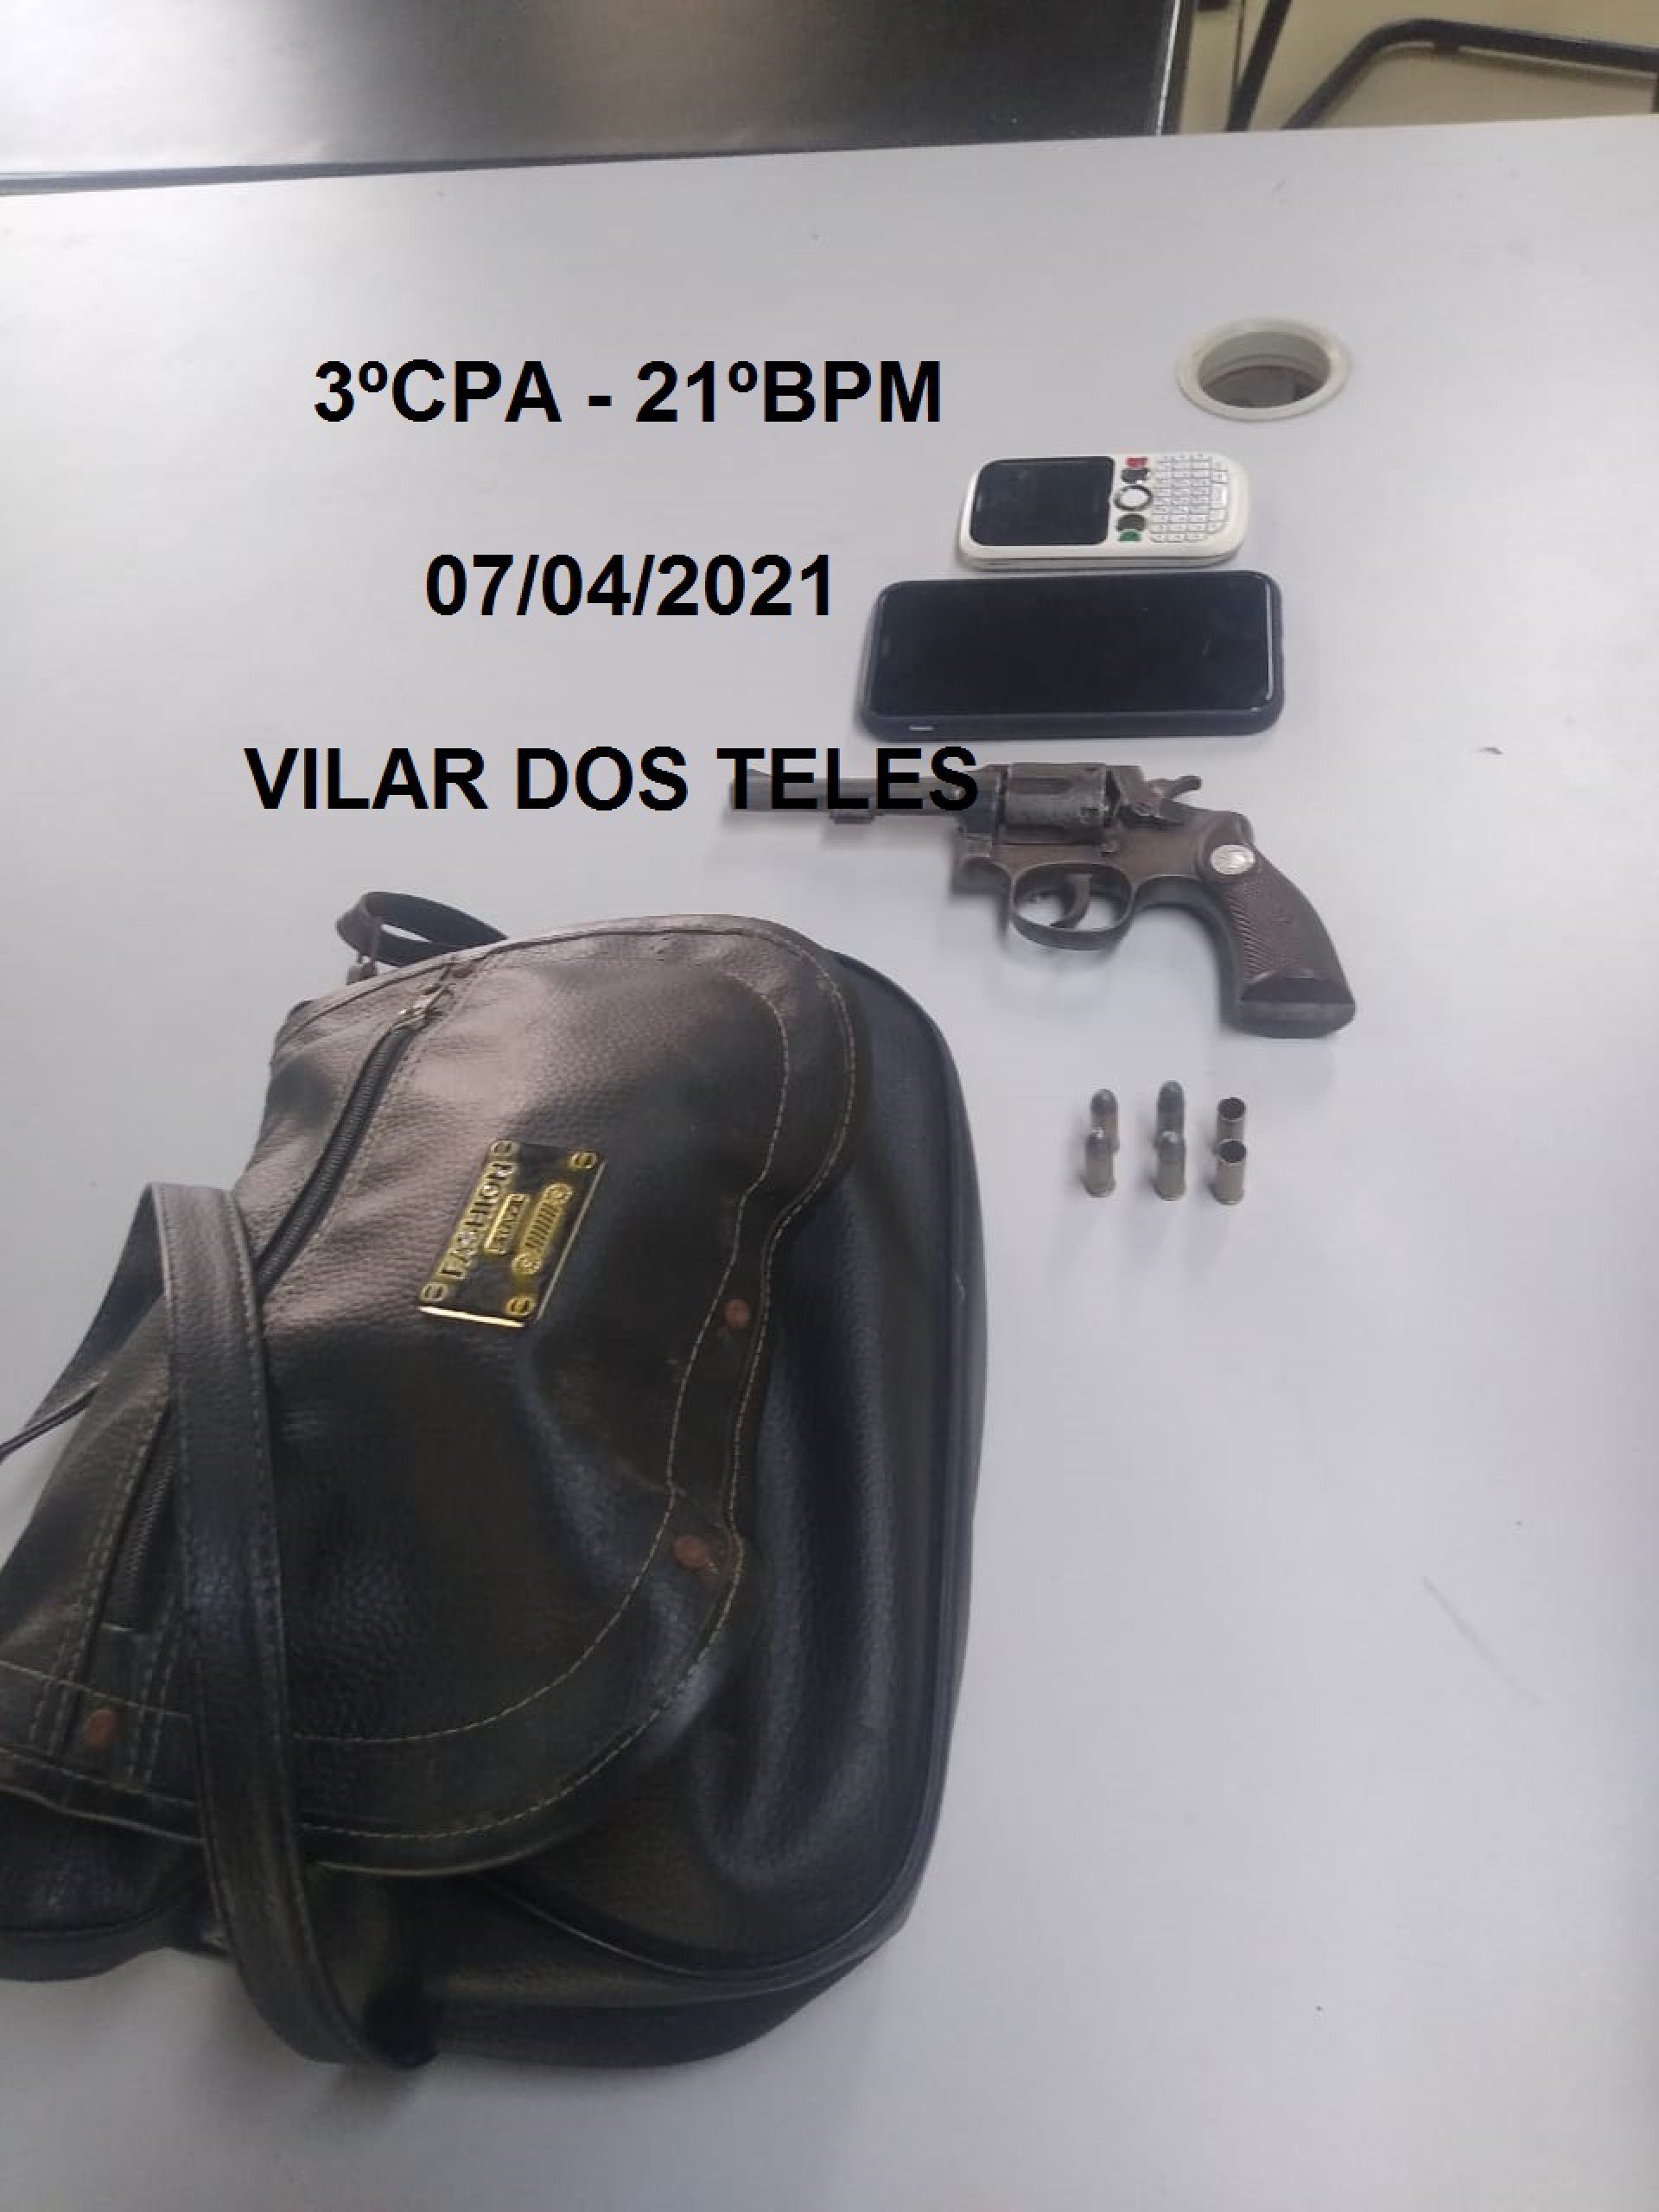 Foram apreendidos um revólver e dois celulares  - Divulgação/PMERJ